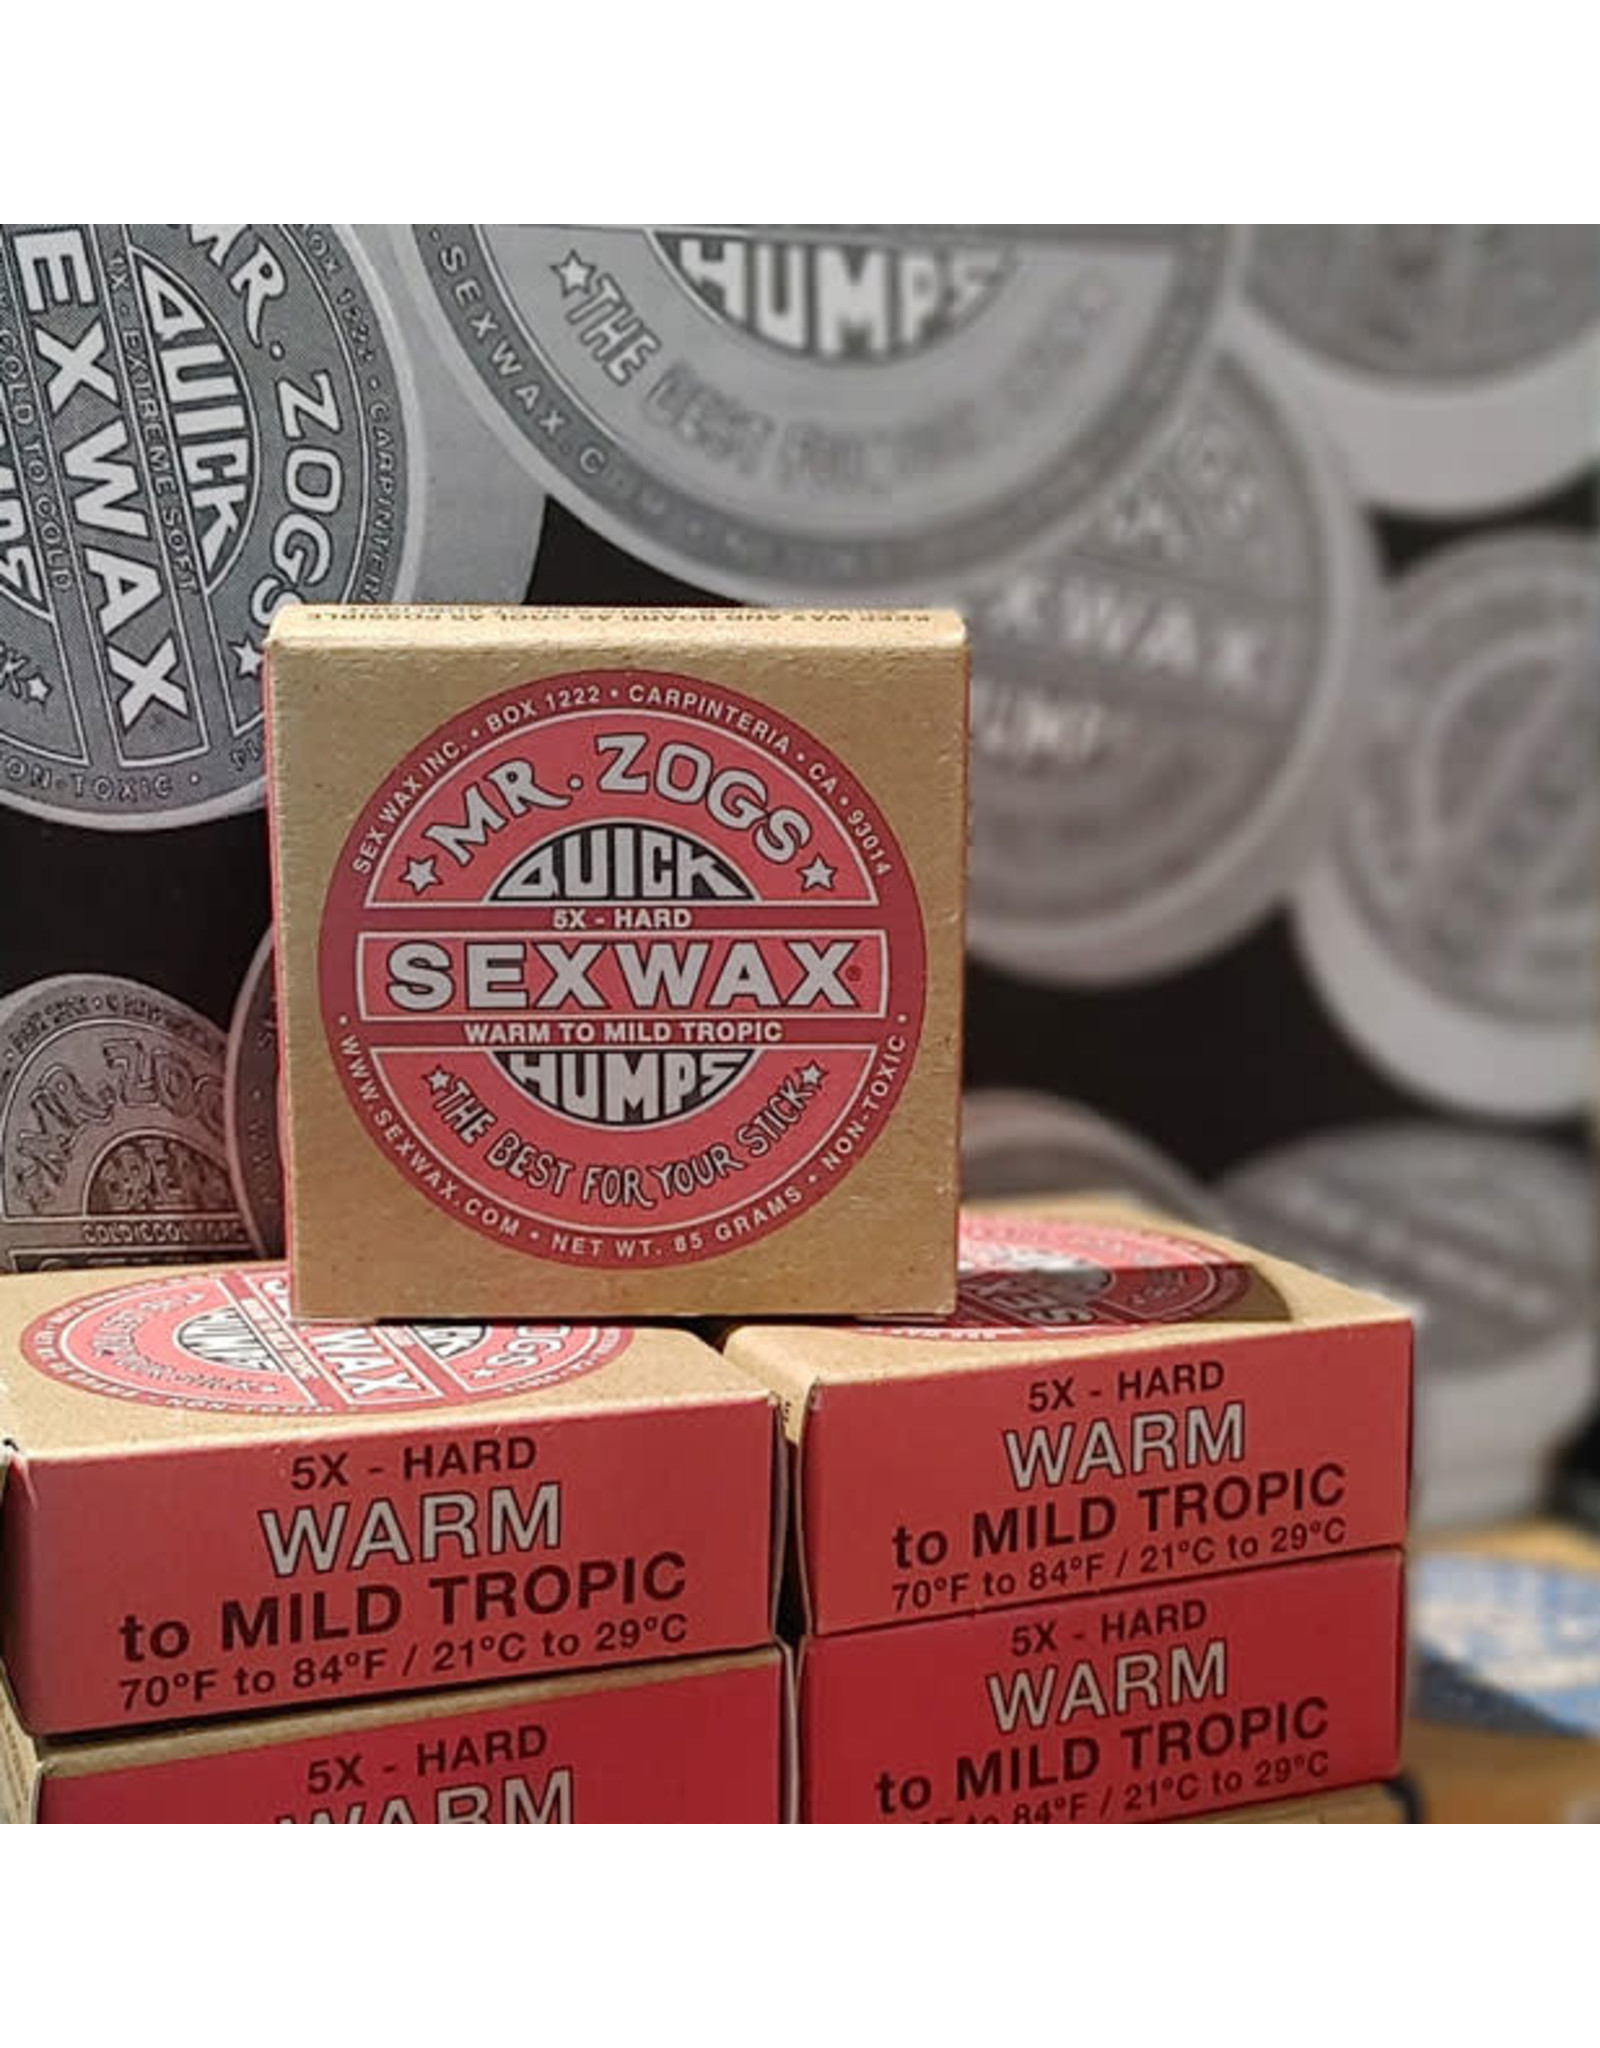 Sex Wax Mr. Zogs Sexwax Quick Humps